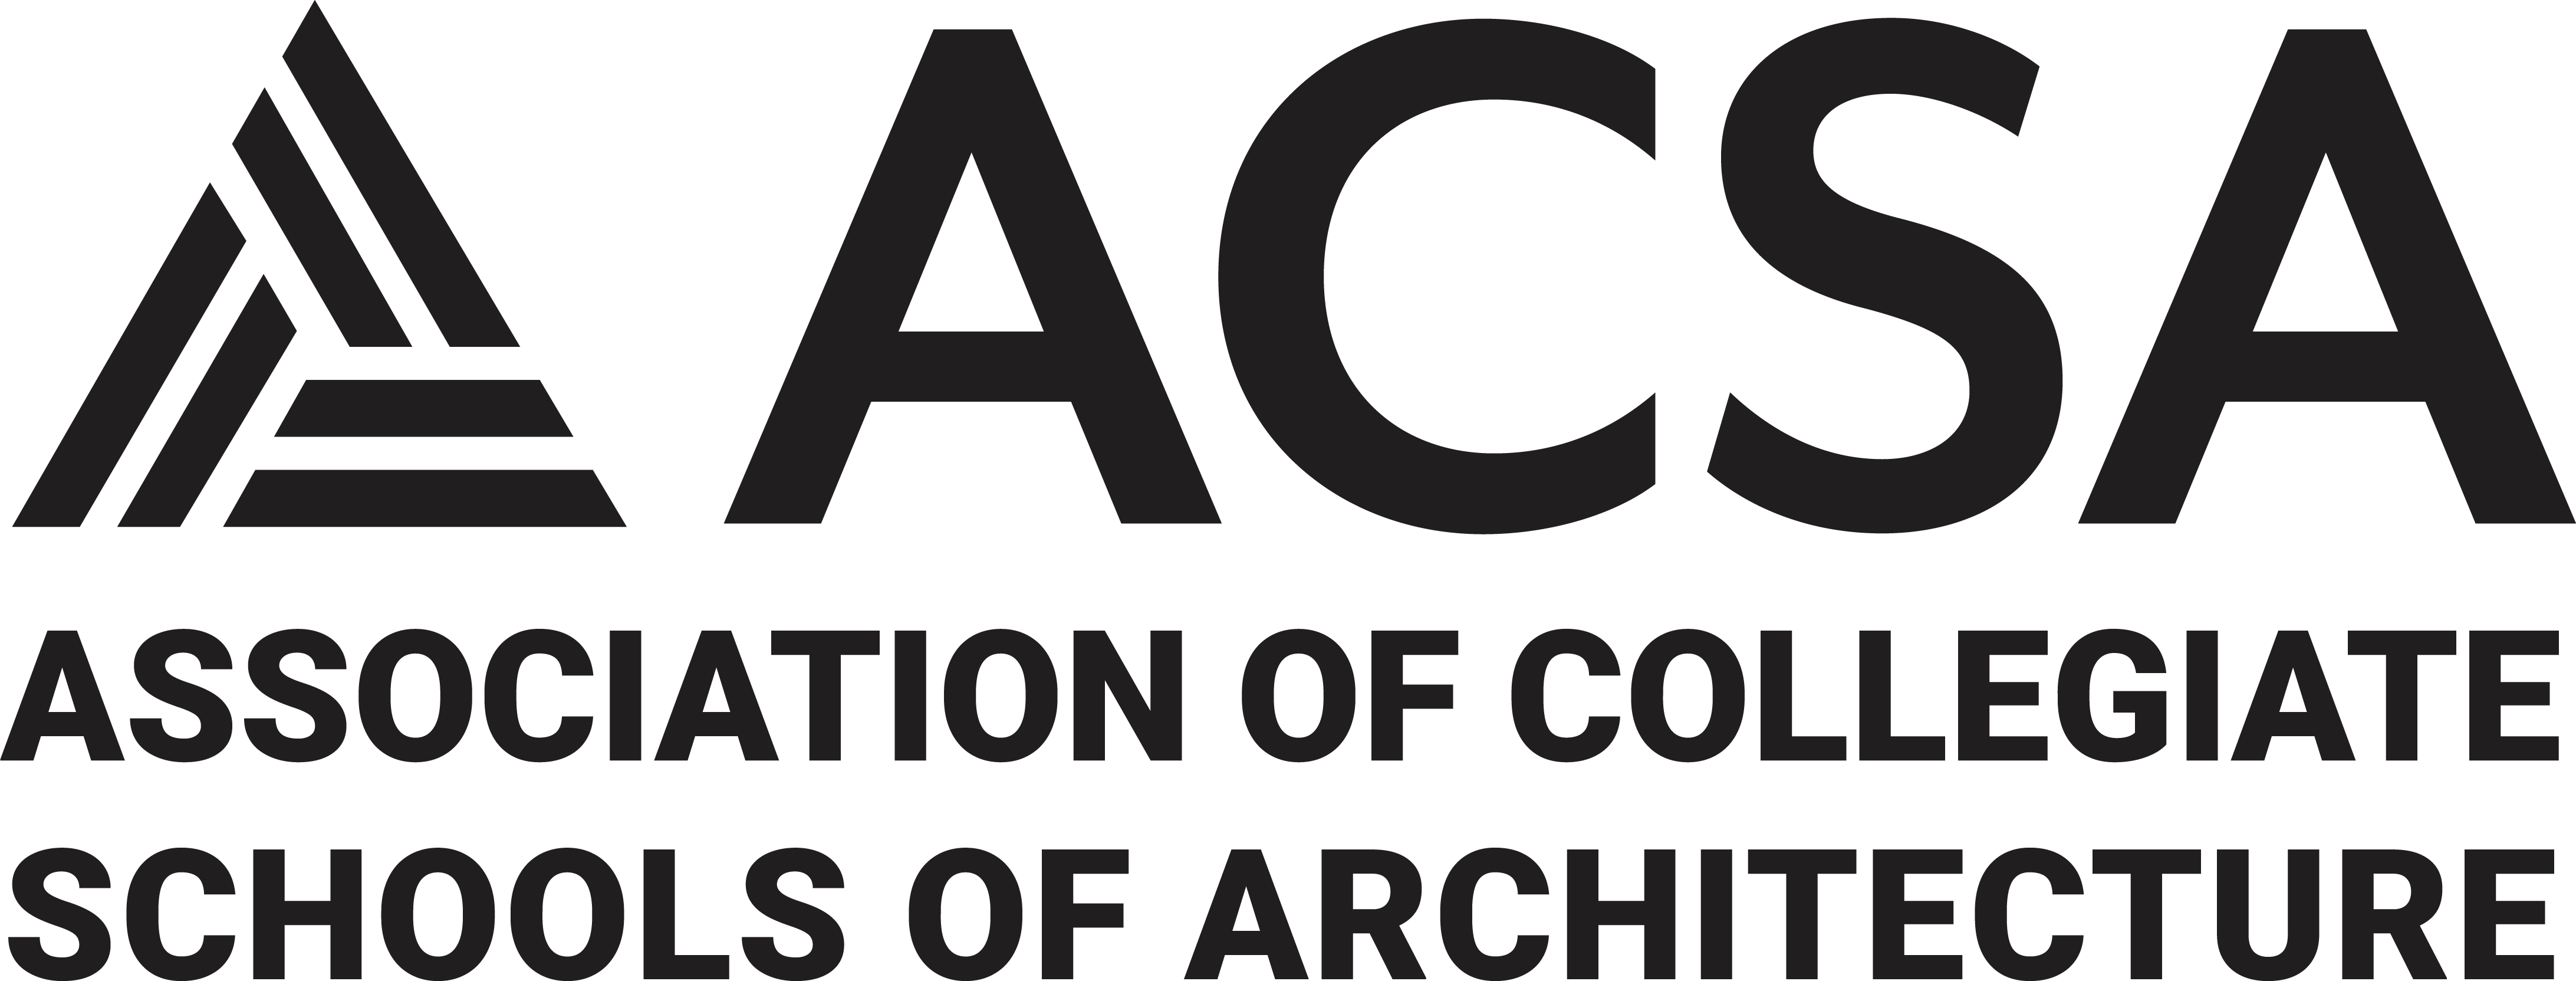 Association of Collegiate Schools of Architecture.